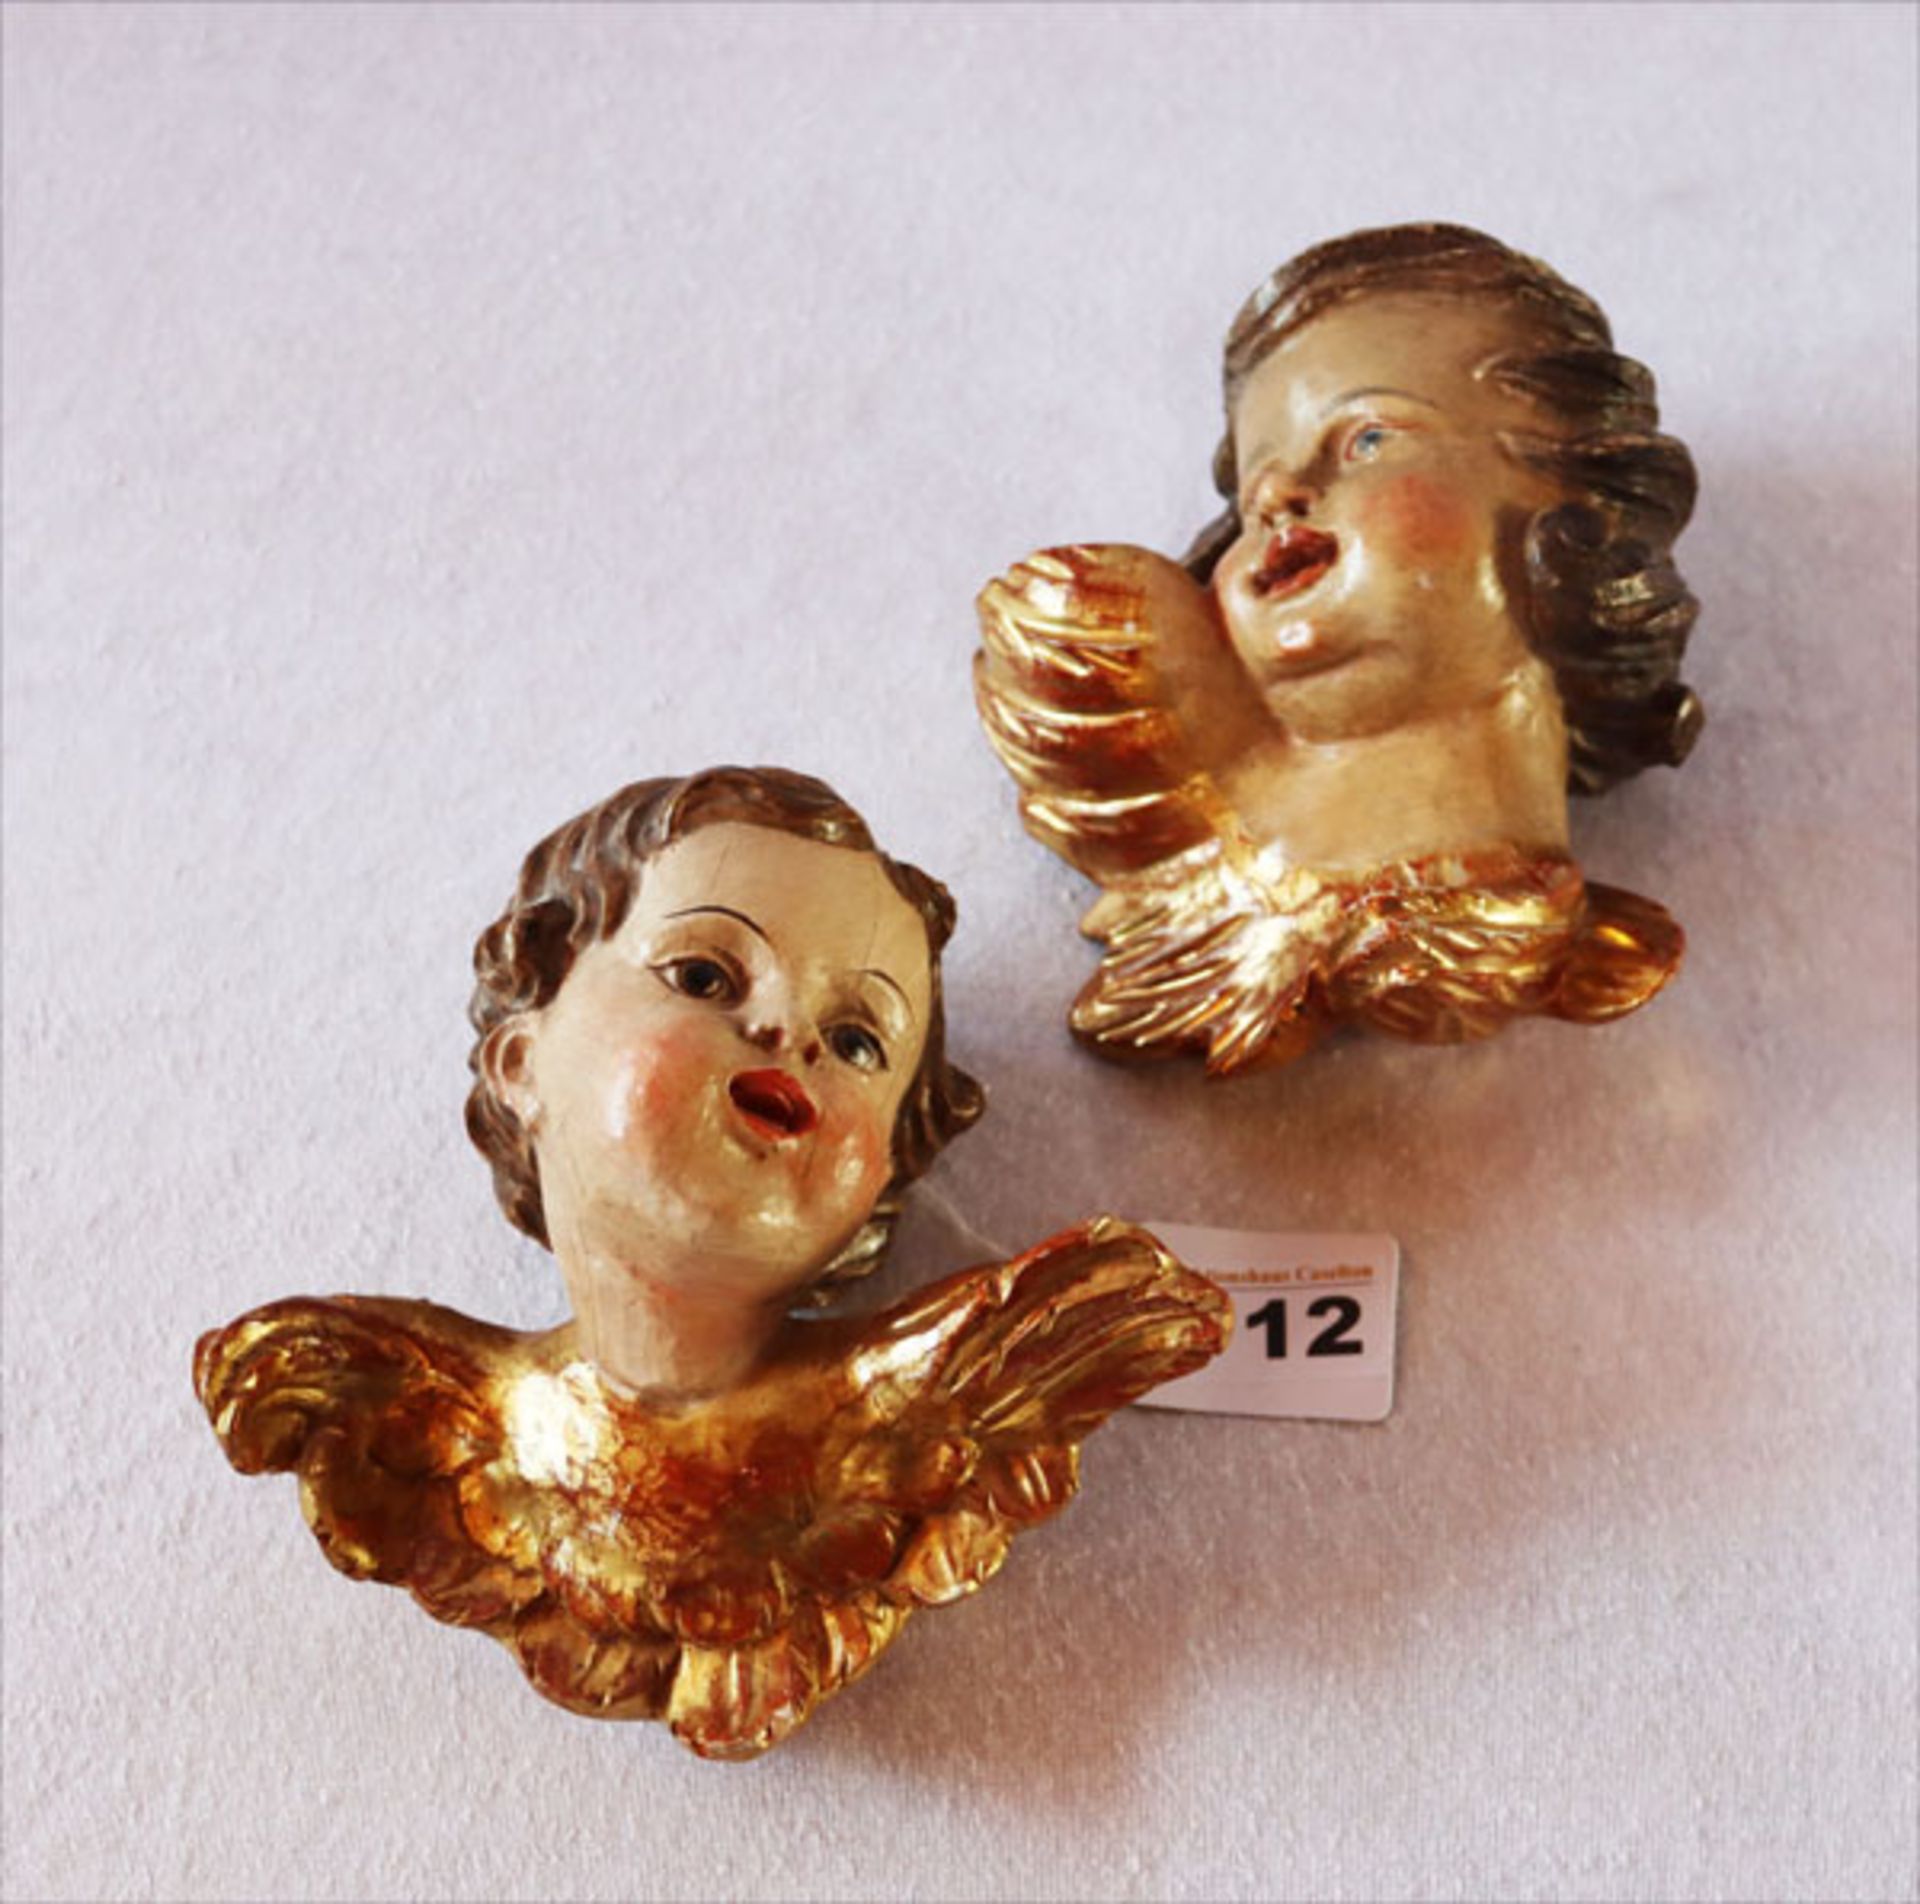 2 Holzfiguren 'Putten', farbig gefaßt, H 14/15 cm, teils berieben und bestossen, Altersspuren